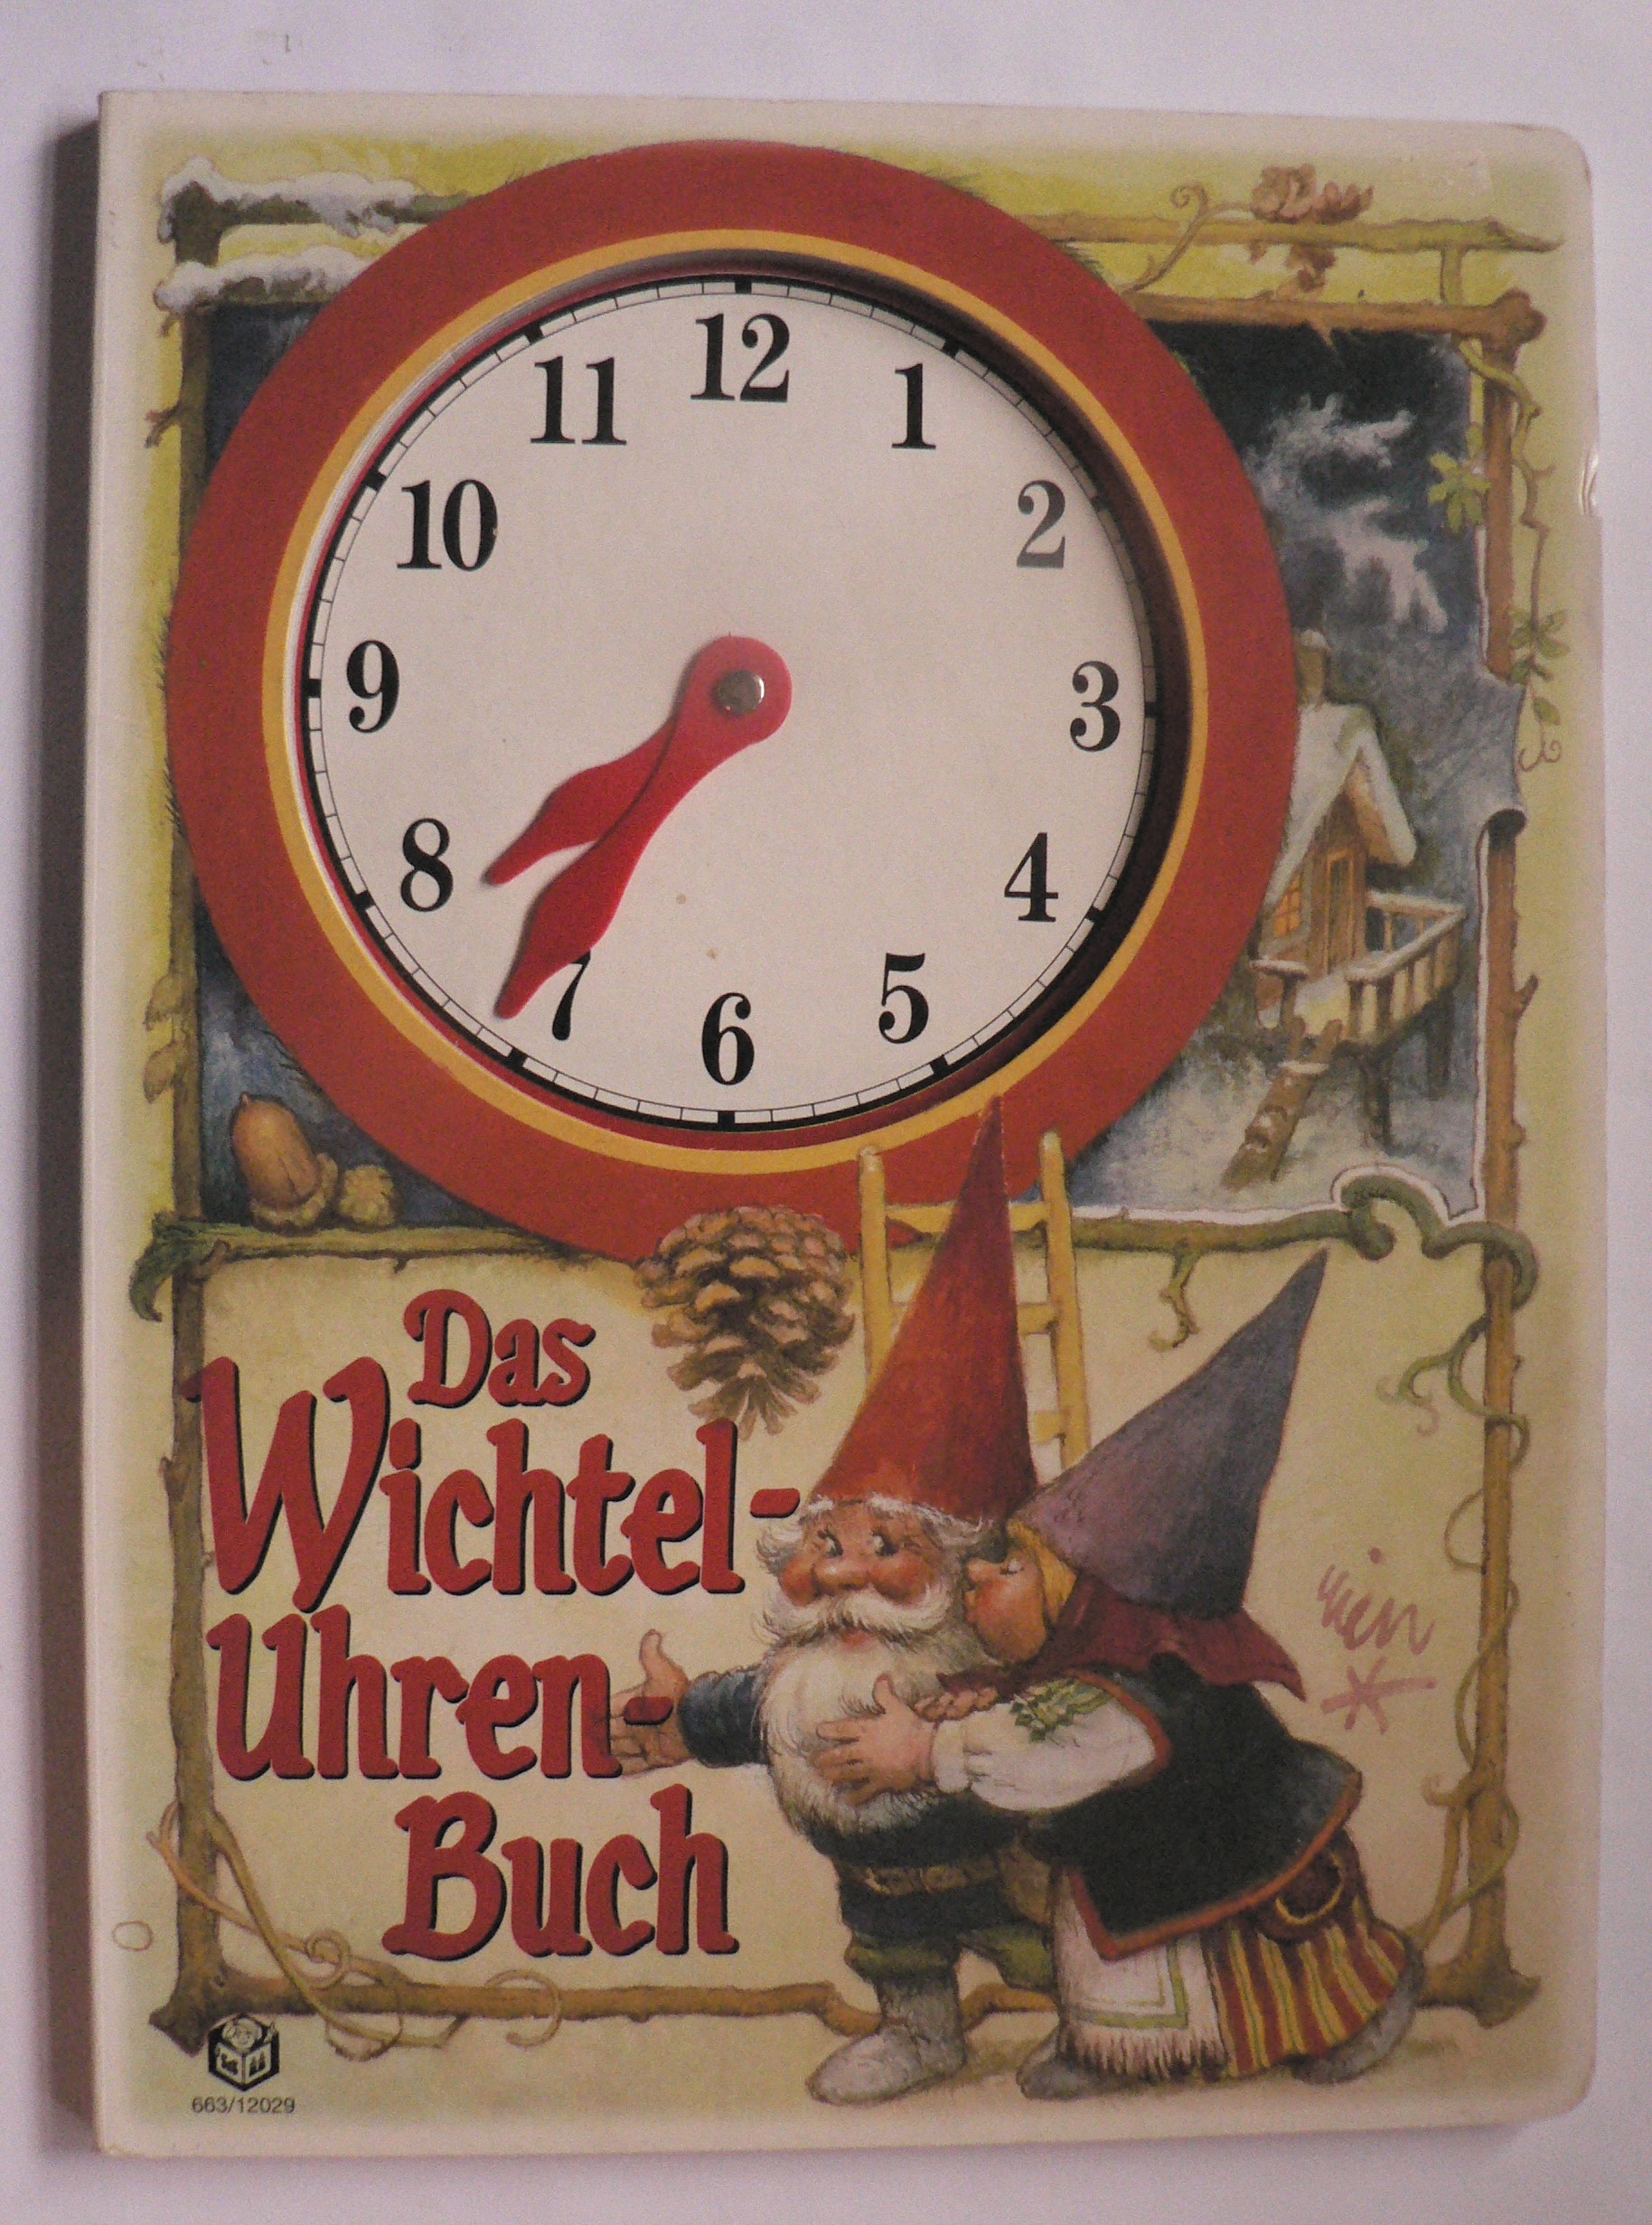 Kok-Kampen, Uitgeverij / Rien Poortvliet  Das Wichtel-Uhrenbuch (Das Wichteluhrenbuch) 